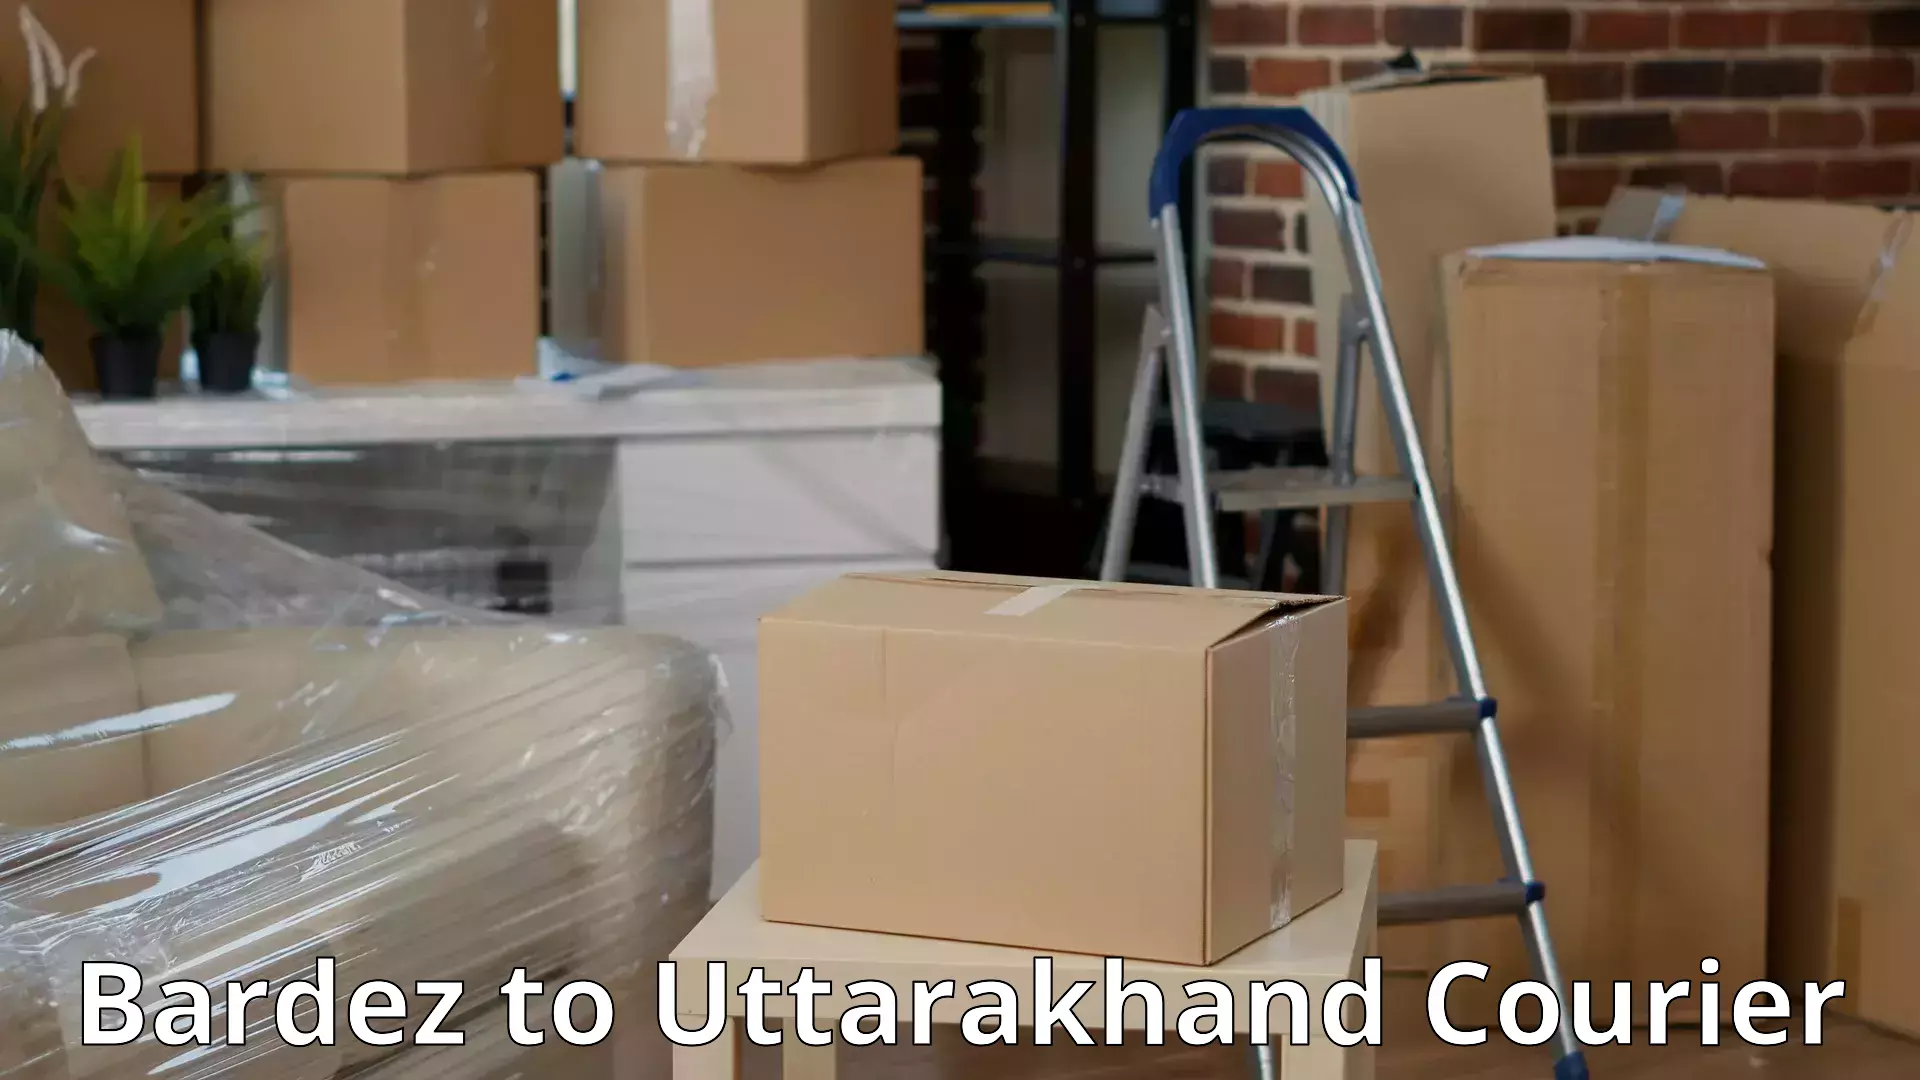 Professional packing services Bardez to Uttarakhand